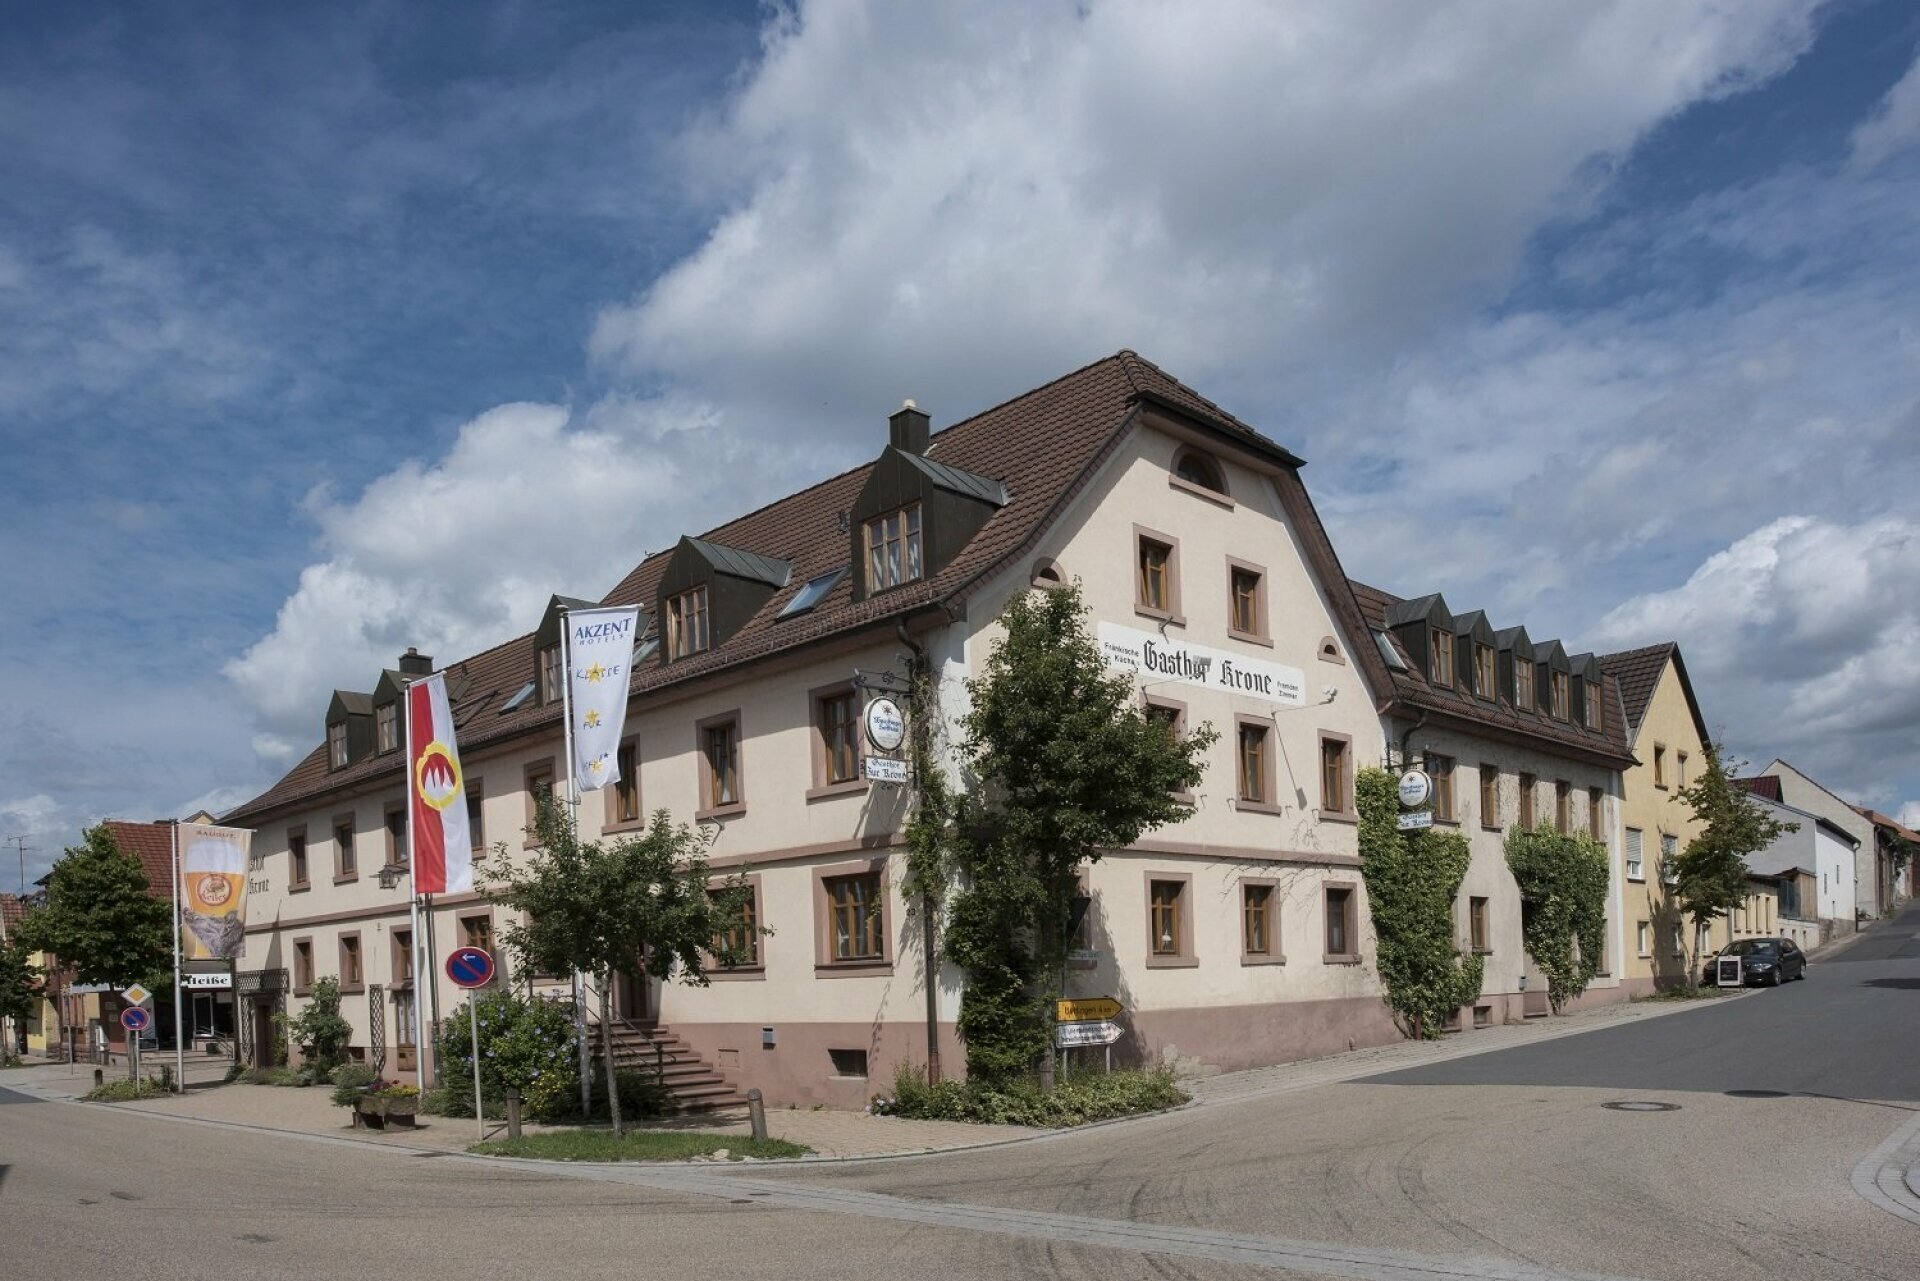 Radeln an Main und Tauber – AKZENT Hotel Krone